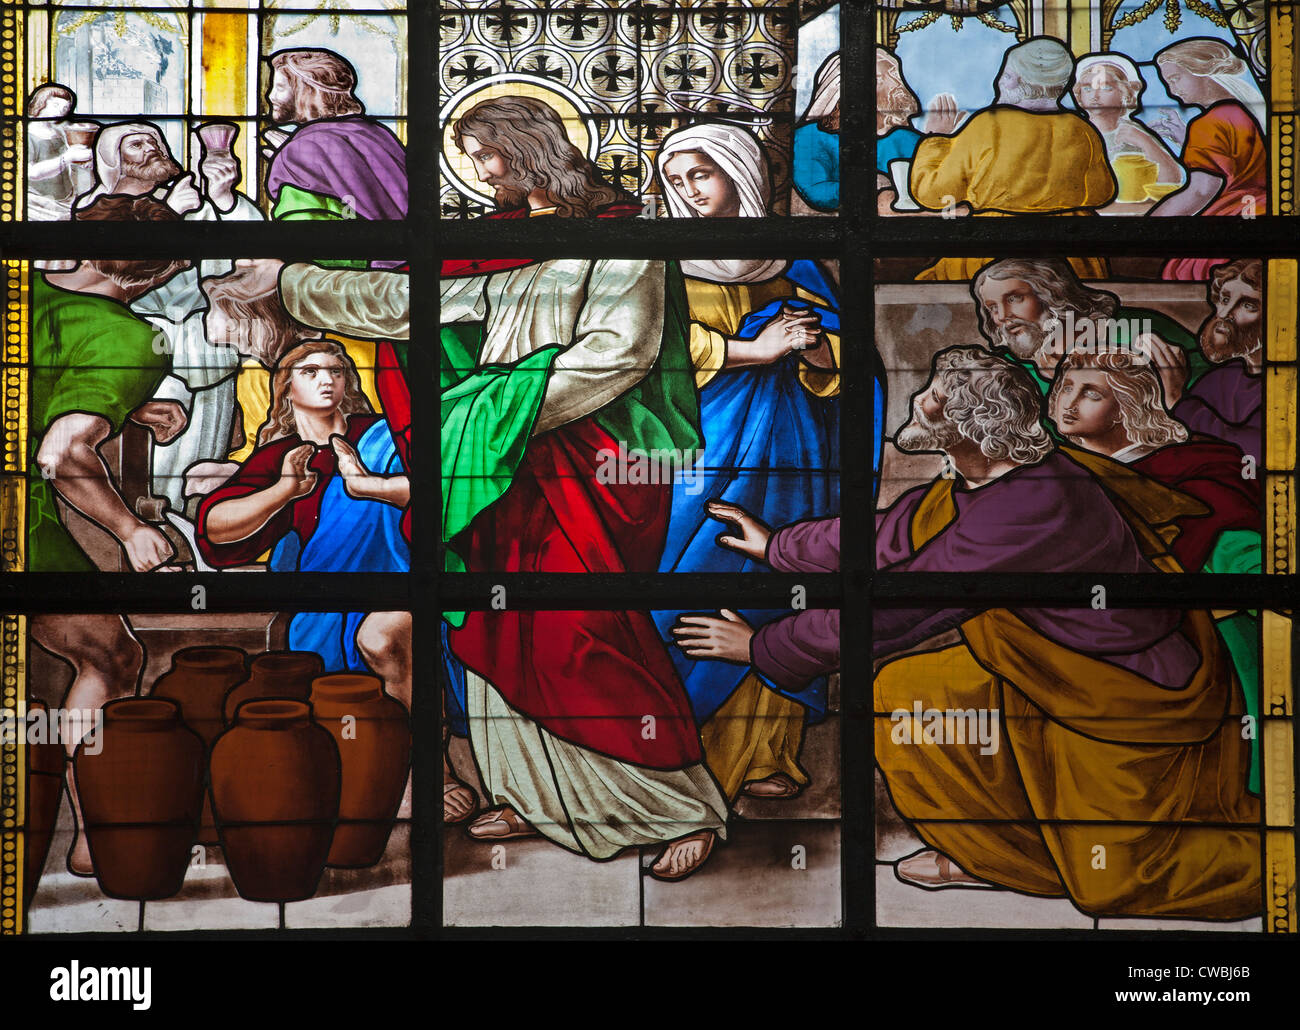 Bruxelles - Giugno 214: da Gesù il miracolo di Cana. Dettaglio del vetro di finestra della chiesa il 21 giugno a Bruxelles. Foto Stock